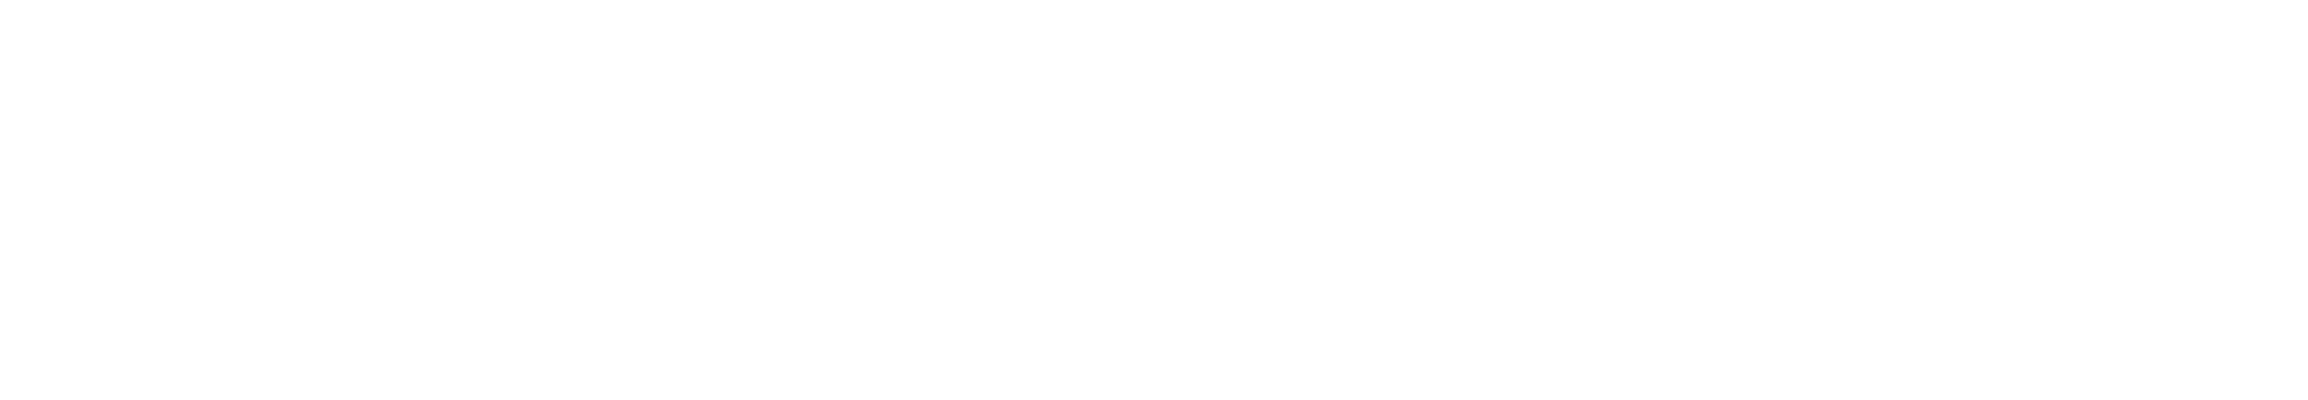 HBO_Max-Logo.Wein-Kopie.png